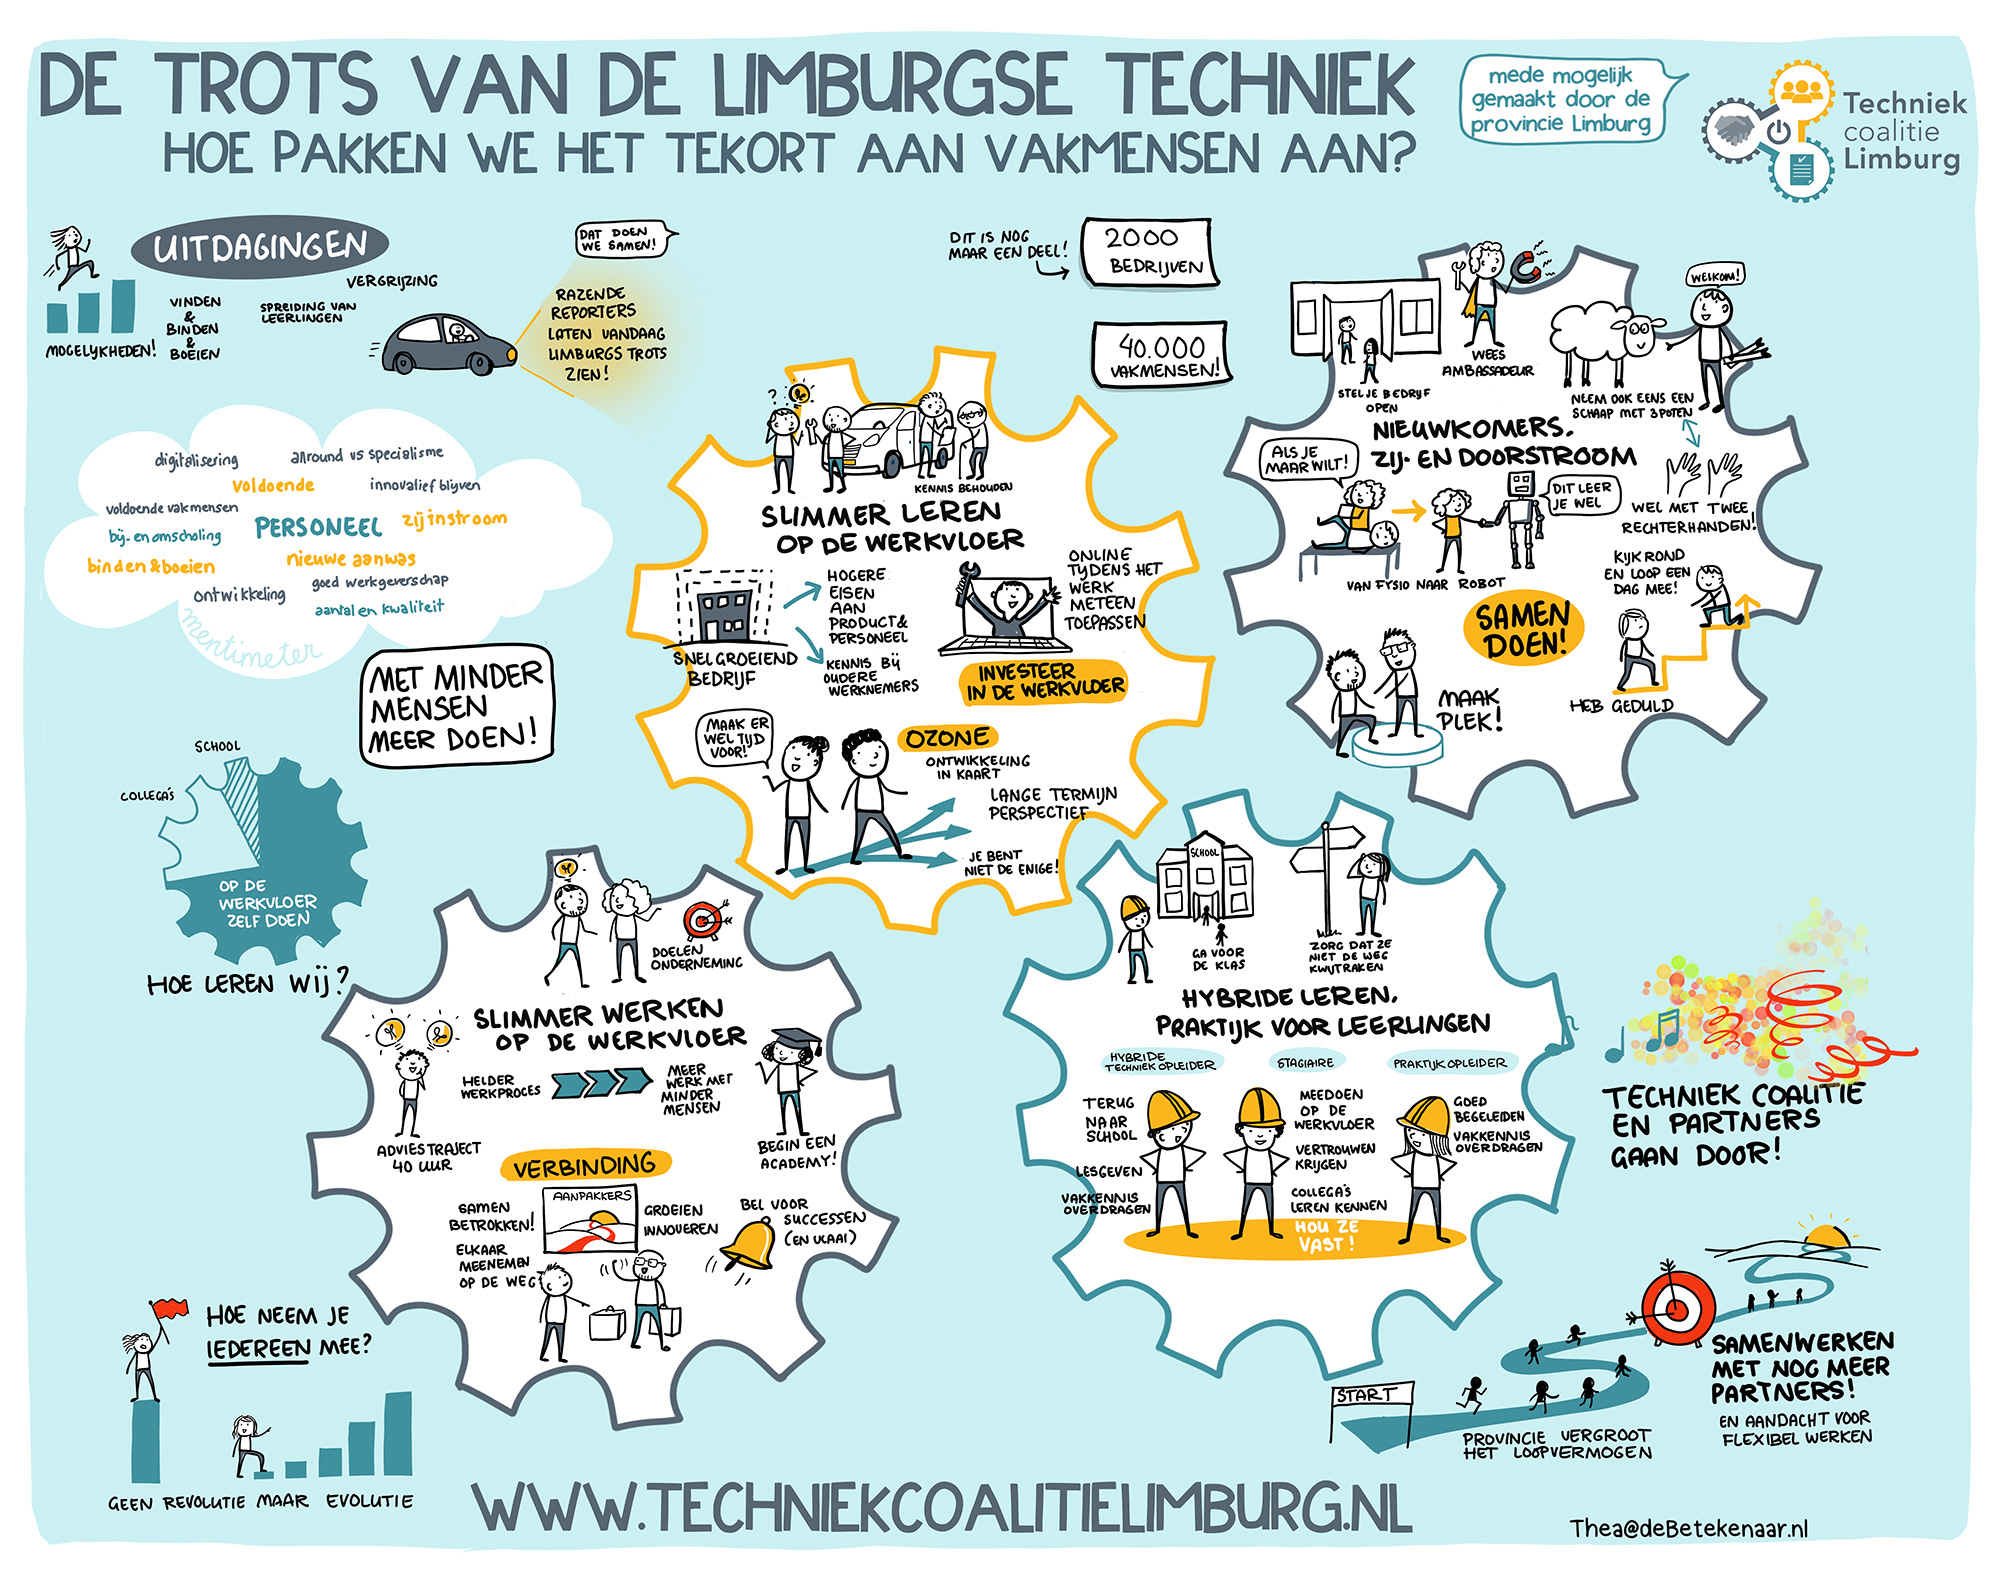 De trots van de Limburgse techniek - Visueel verslag